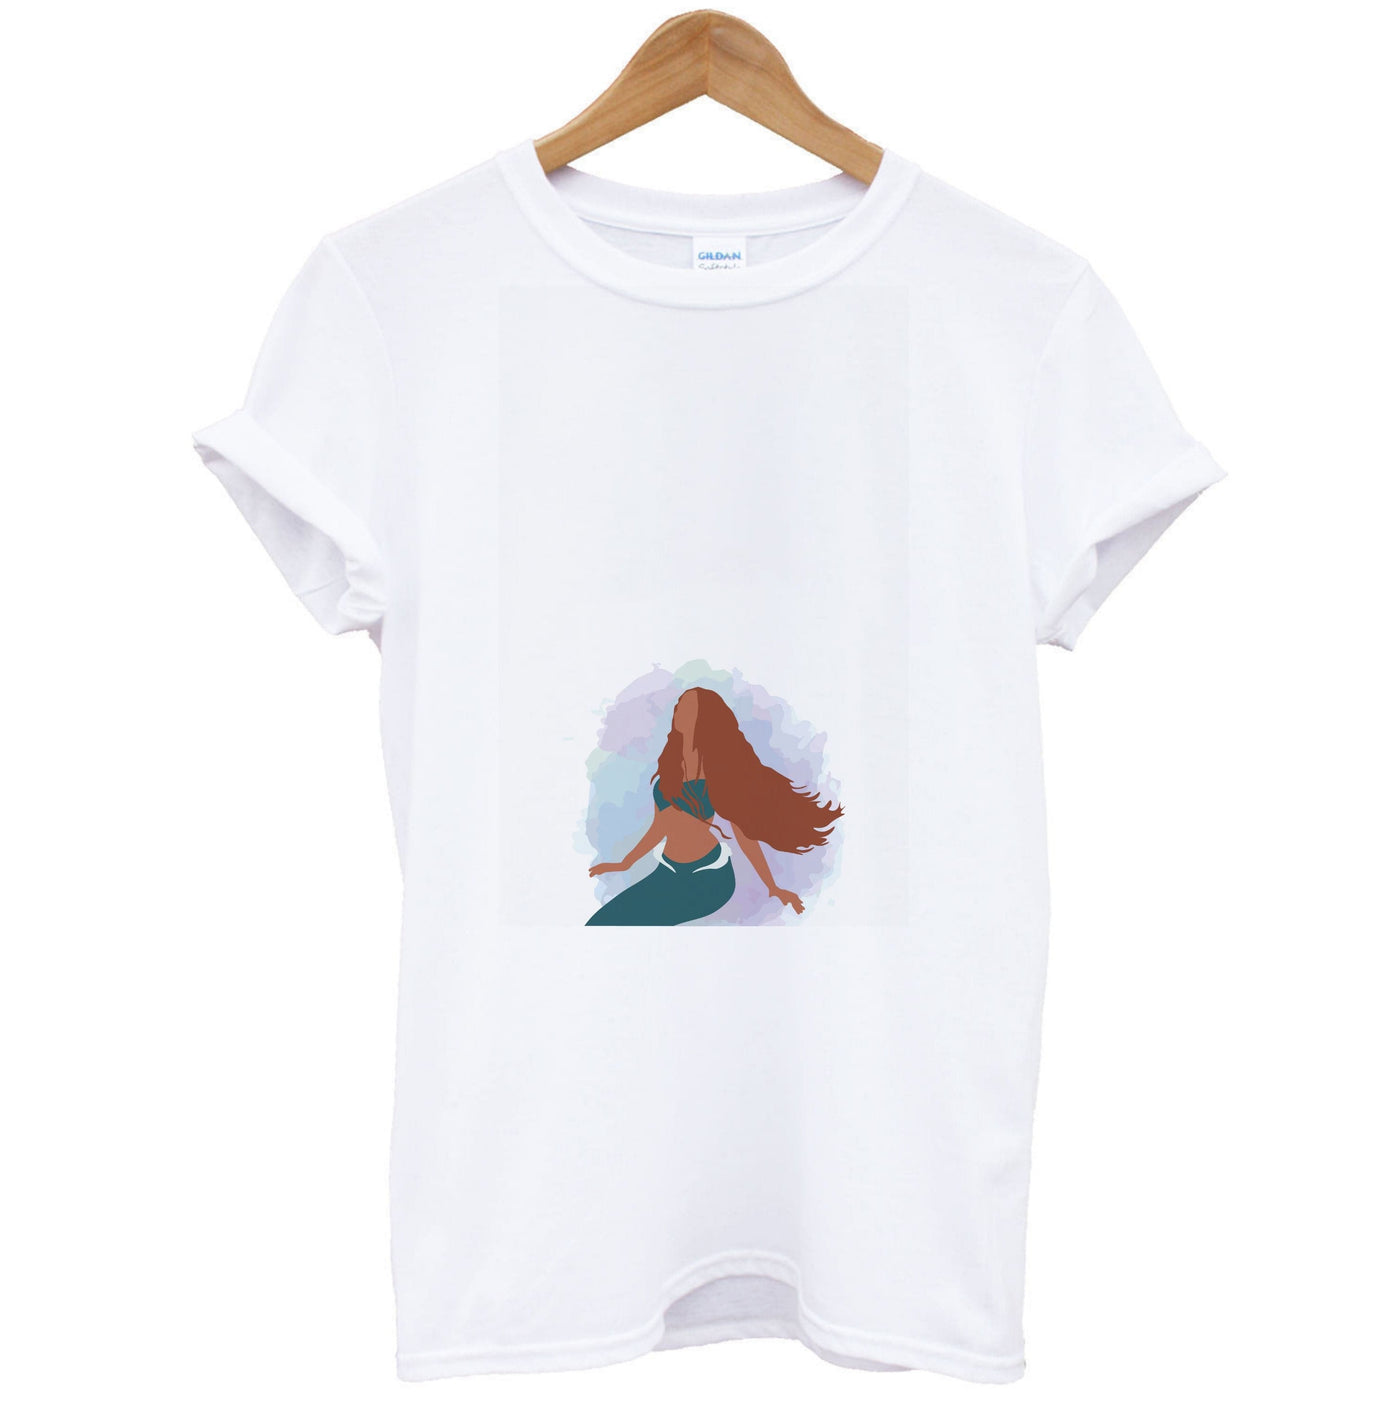 Ariel Watercolour - The Little Mermaid T-Shirt